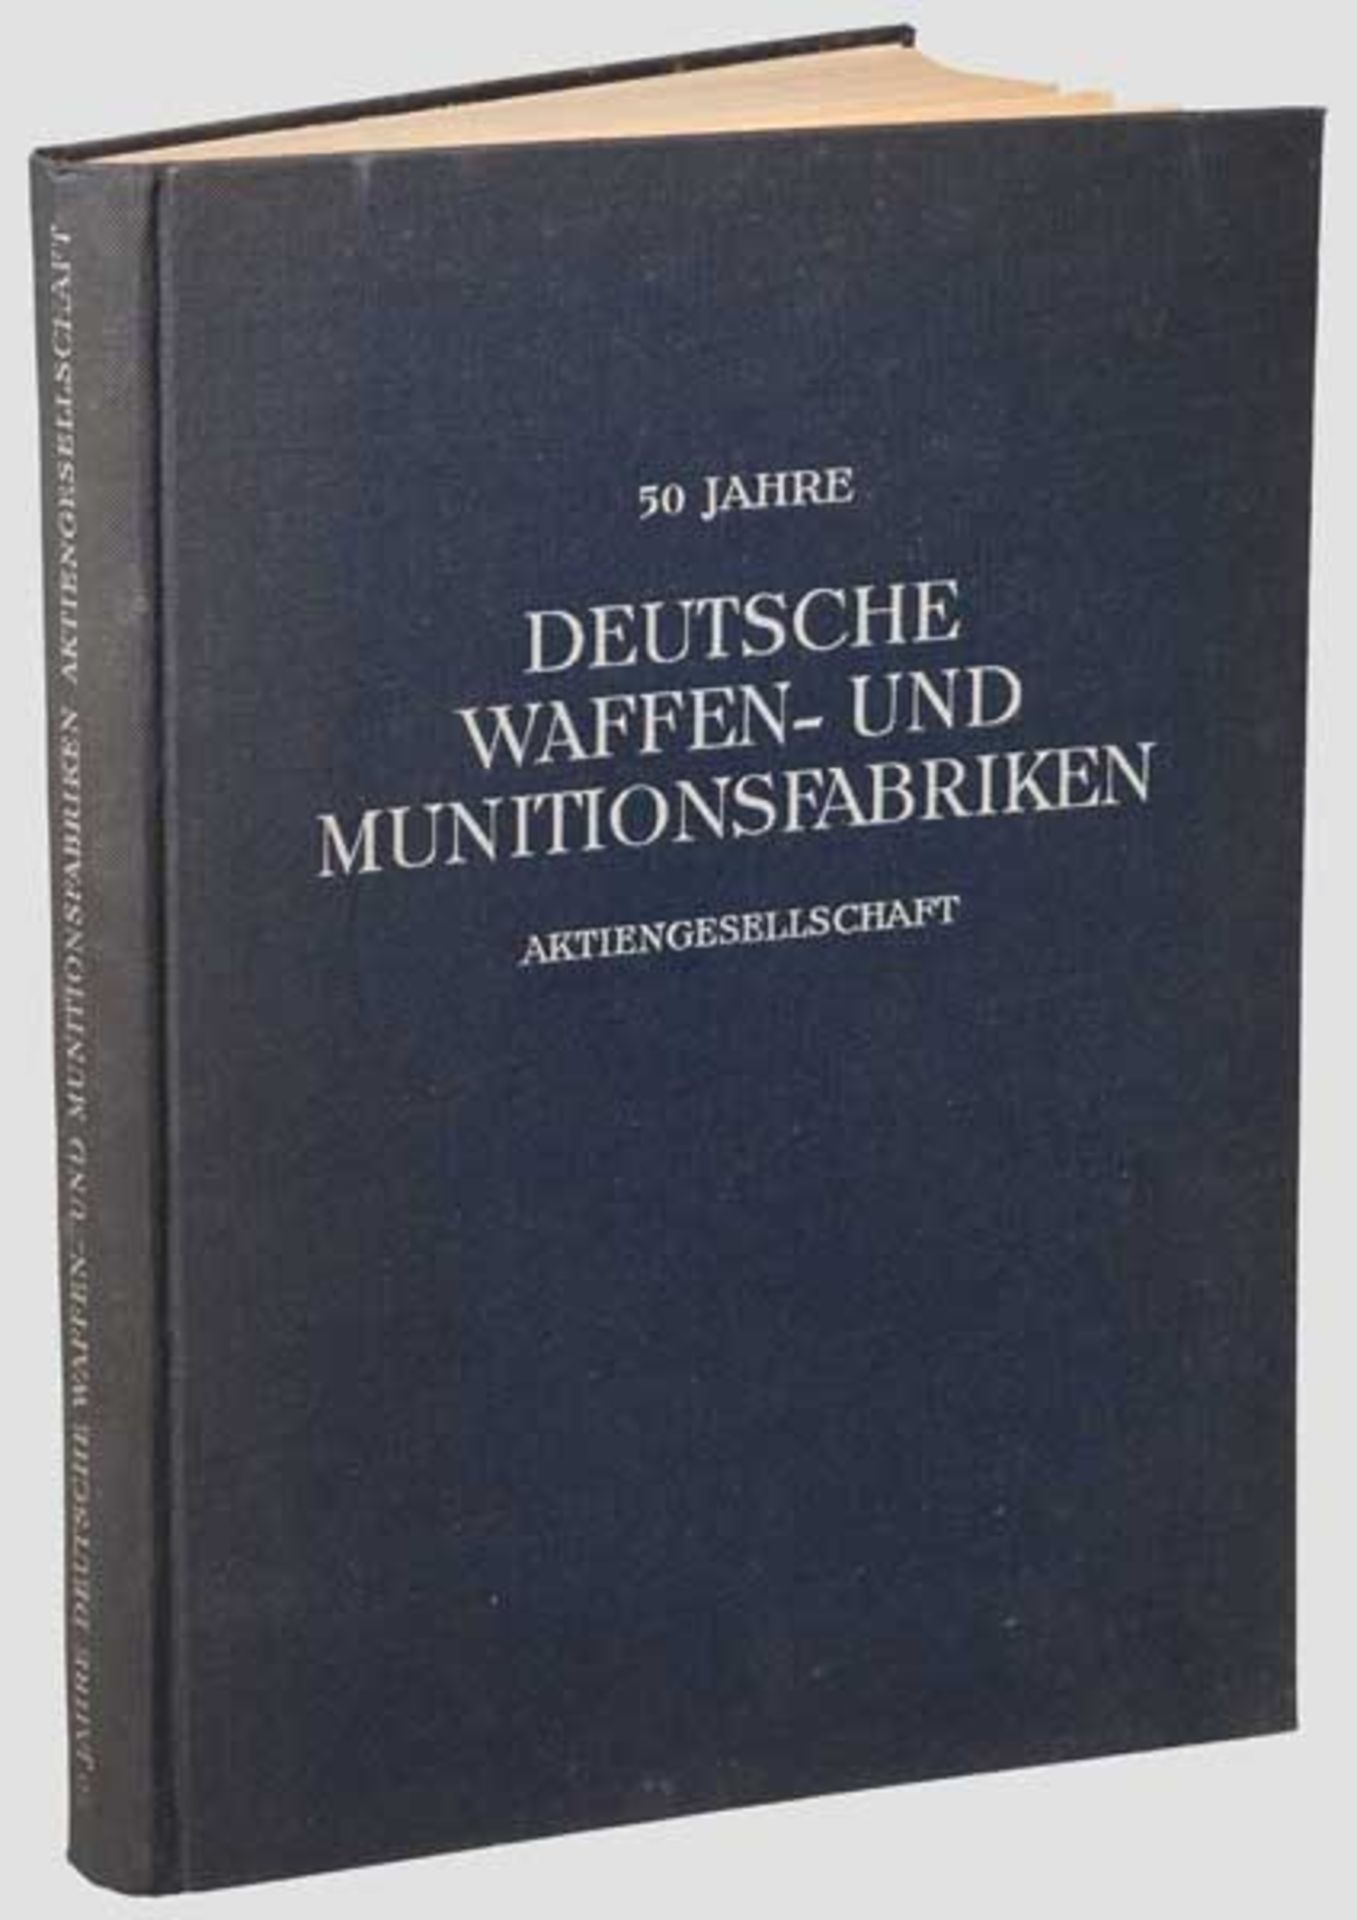 Jubiläumsschrift "50 Jahre Deutsche Waffen- und Munitionsfabriken AG" Aus dem Jahr 1939. 143